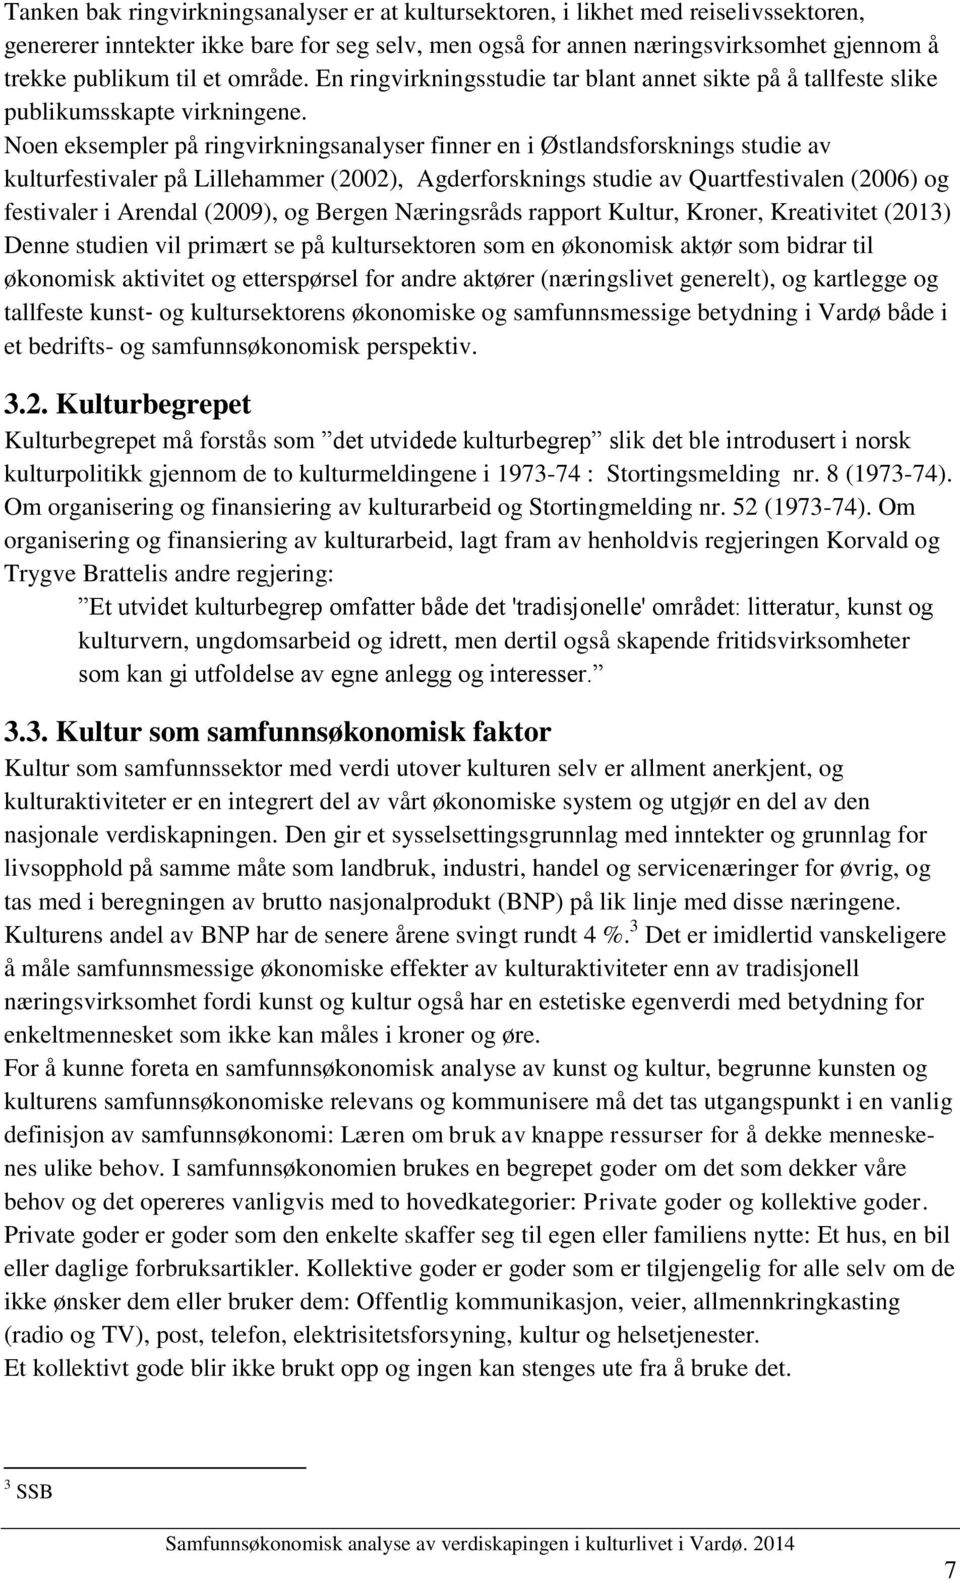 Noen eksempler på ringvirkningsanalyser finner en i Østlandsforsknings studie av kulturfestivaler på Lillehammer (2002), Agderforsknings studie av Quartfestivalen (2006) og festivaler i Arendal